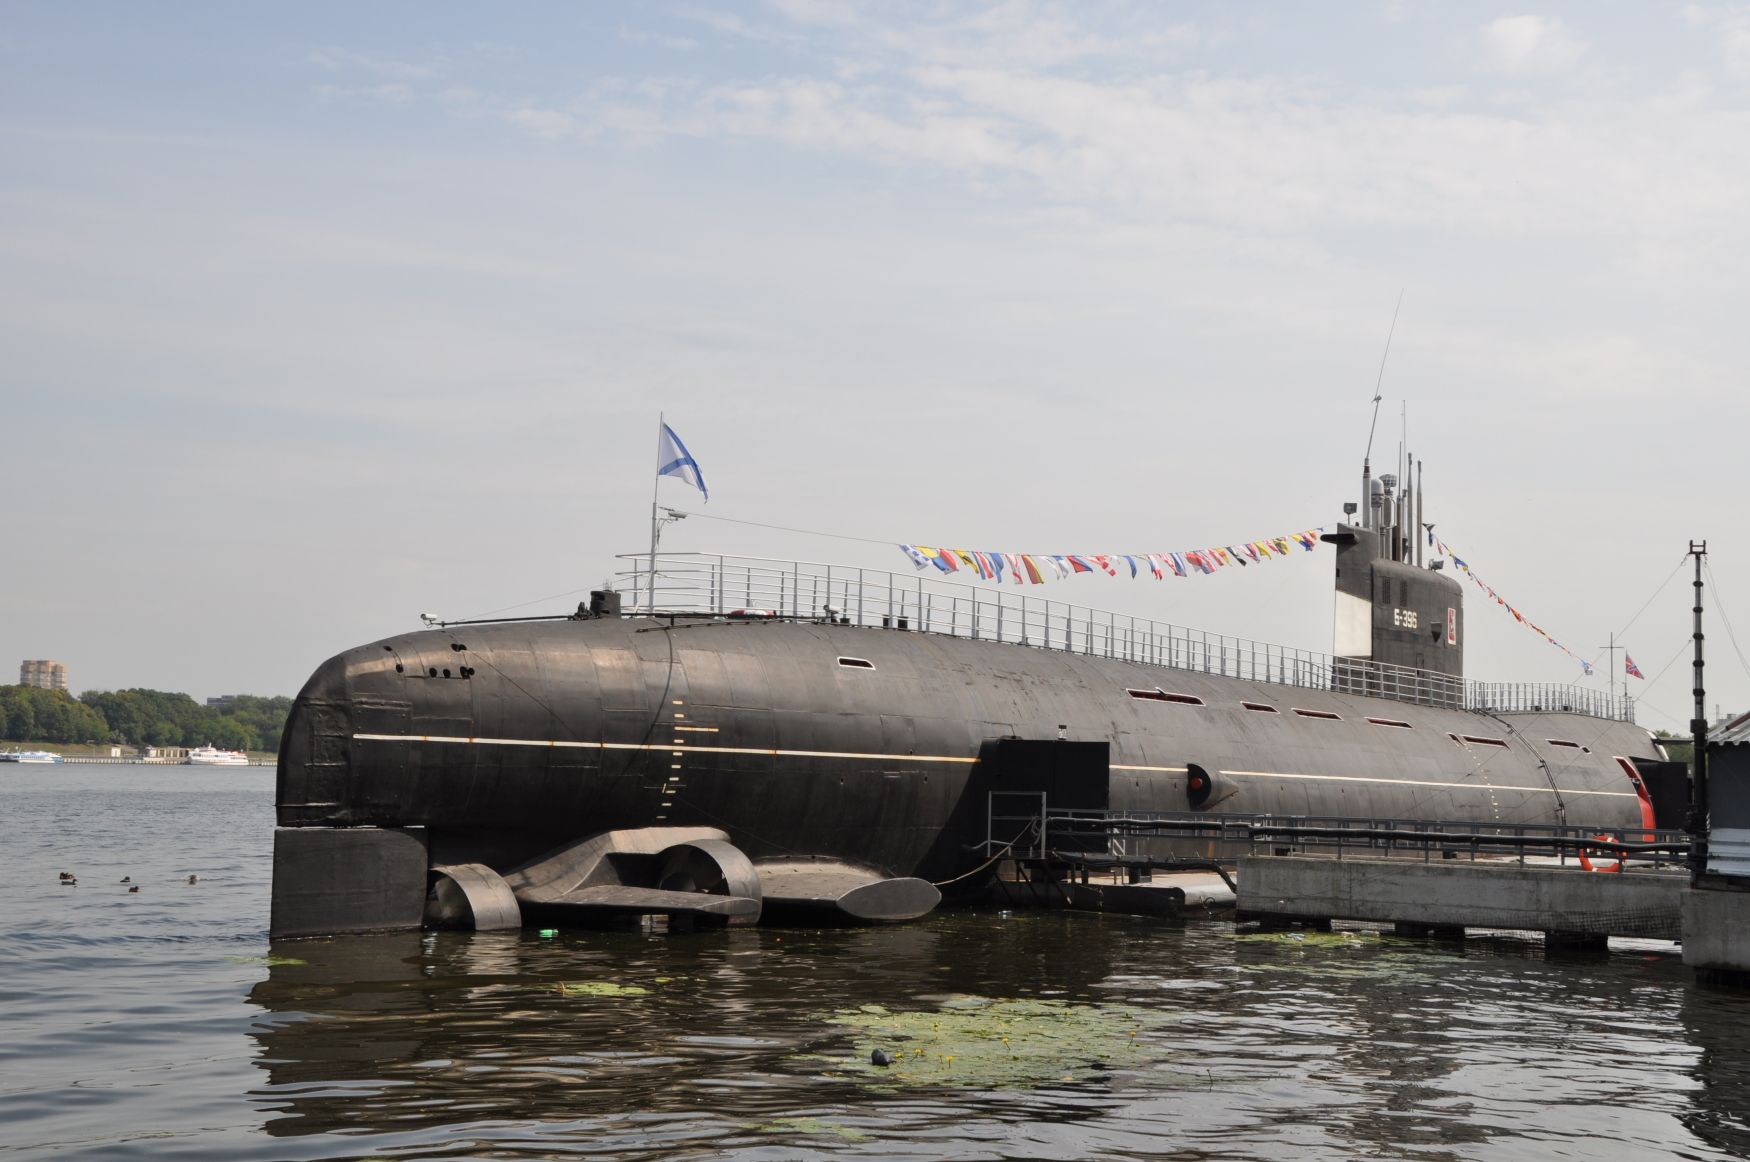 Vraket av en sovjetisk ubåt senket for 30 år siden utenfor kysten av Norge er fortsatt radioaktivt